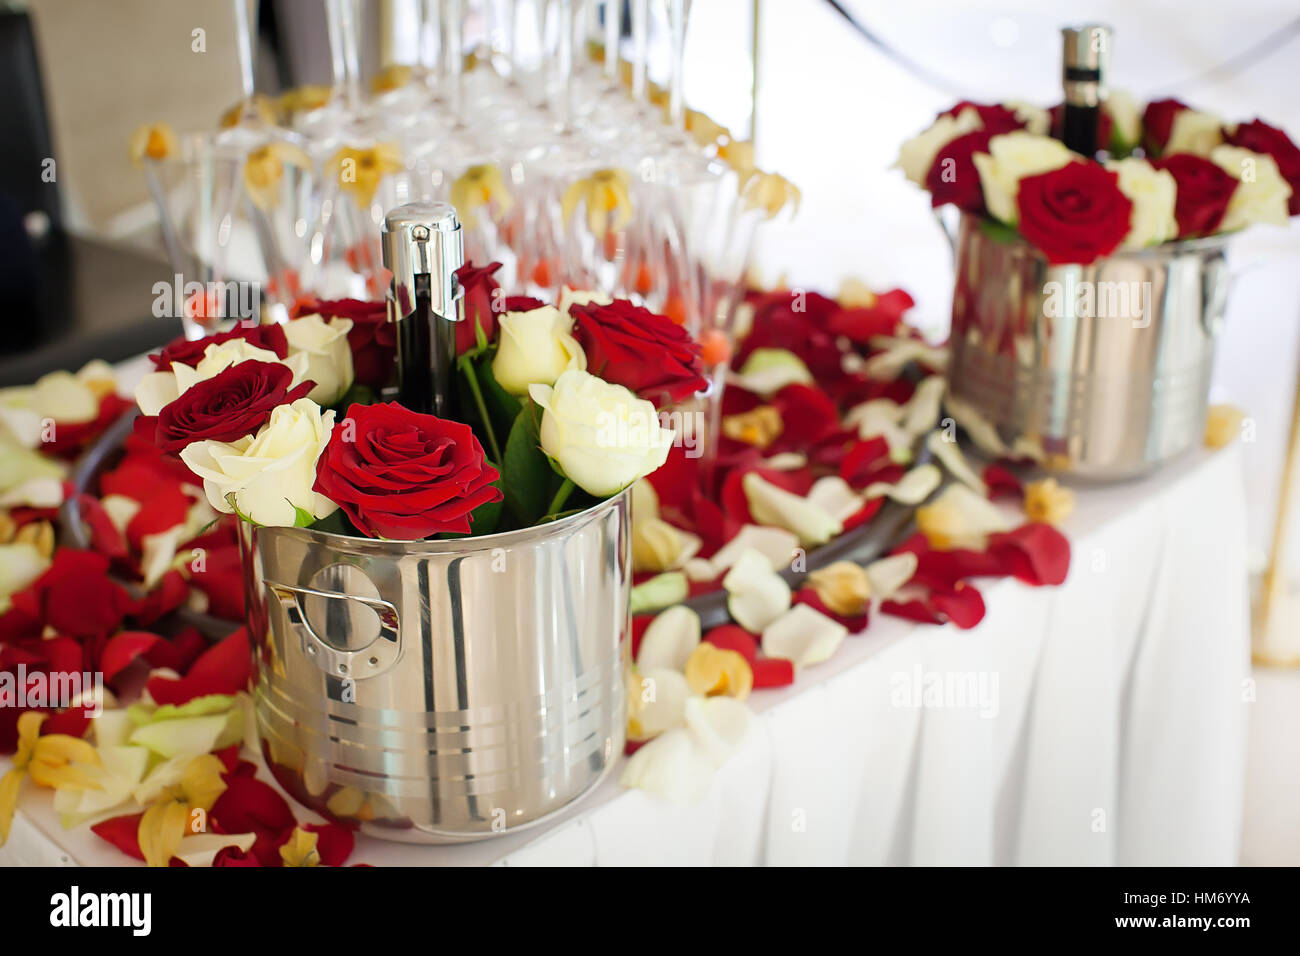 Flasche Champagner in einem Eimer mit Blumen Stockfoto